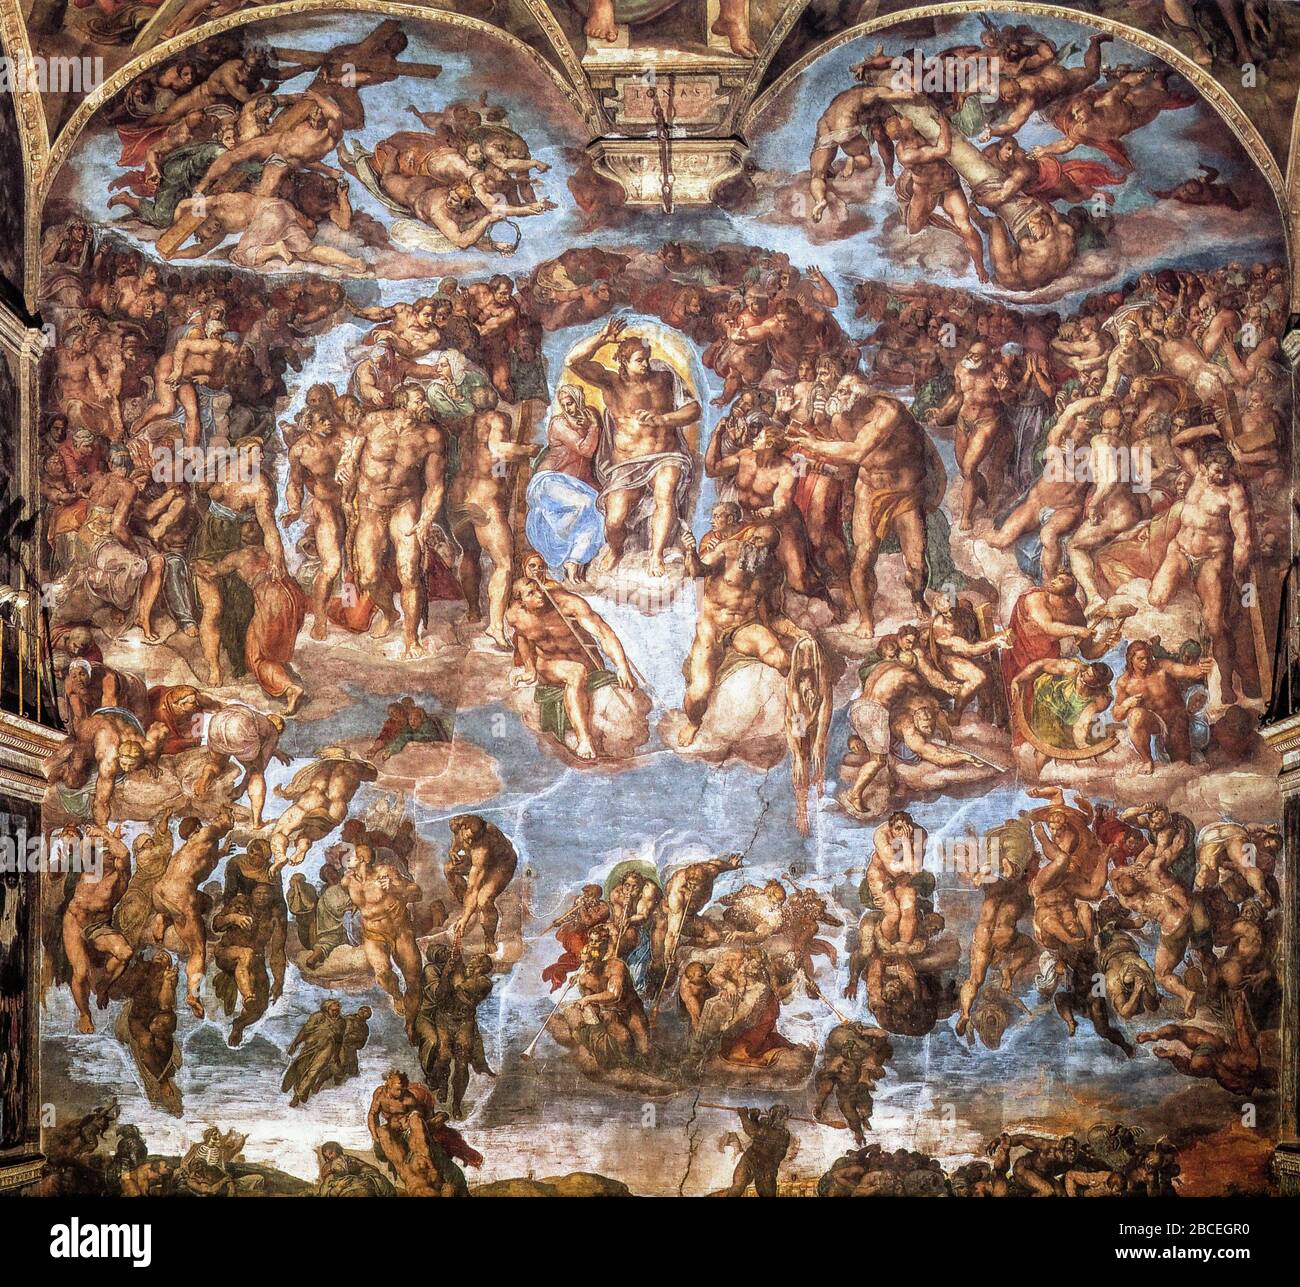 Città del Vaticano - Cappella Sistina - Michelangelo Buonarroti - Giudizio universale 1534 - 1541 Foto Stock